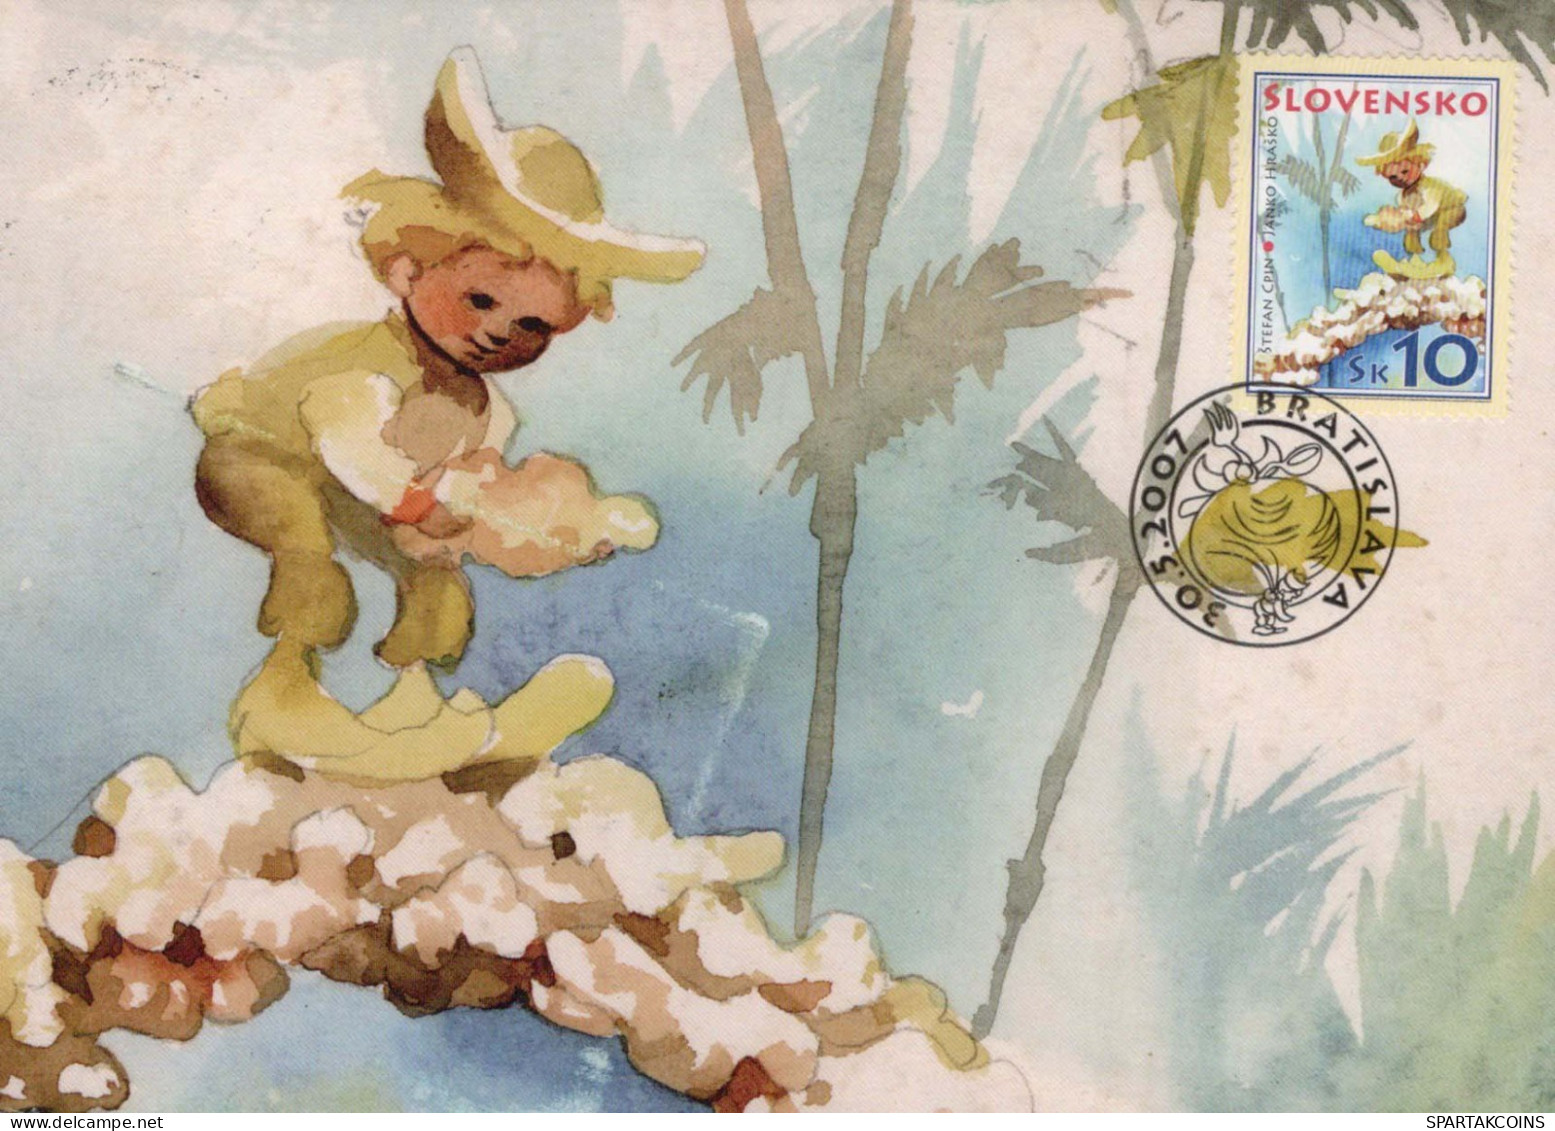 ENFANTS HUMOUR Vintage Carte Postale CPSM #PBV235.FR - Humorvolle Karten